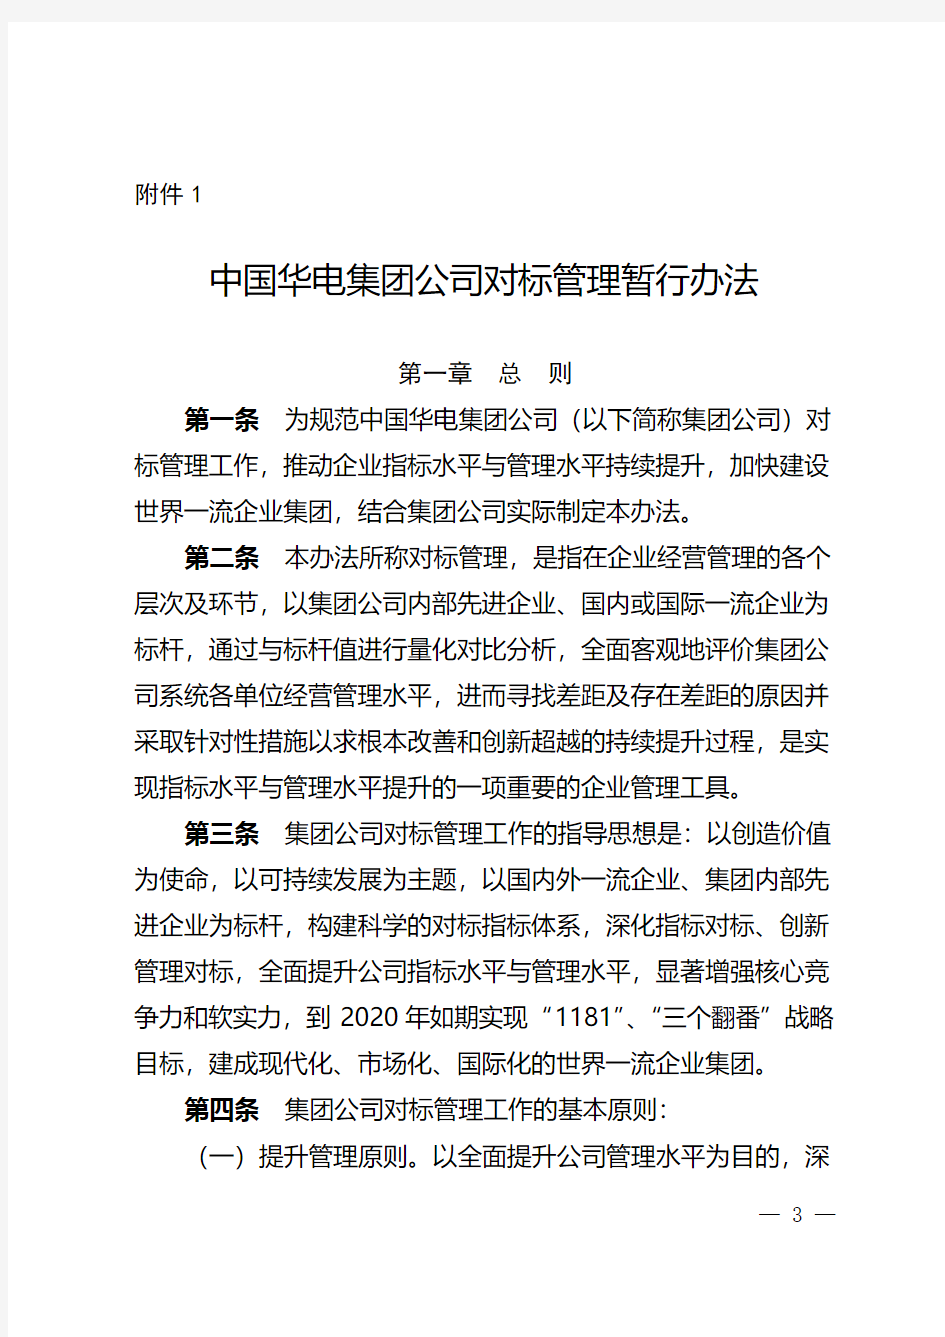 中国华电集团公司对标管理暂行办法